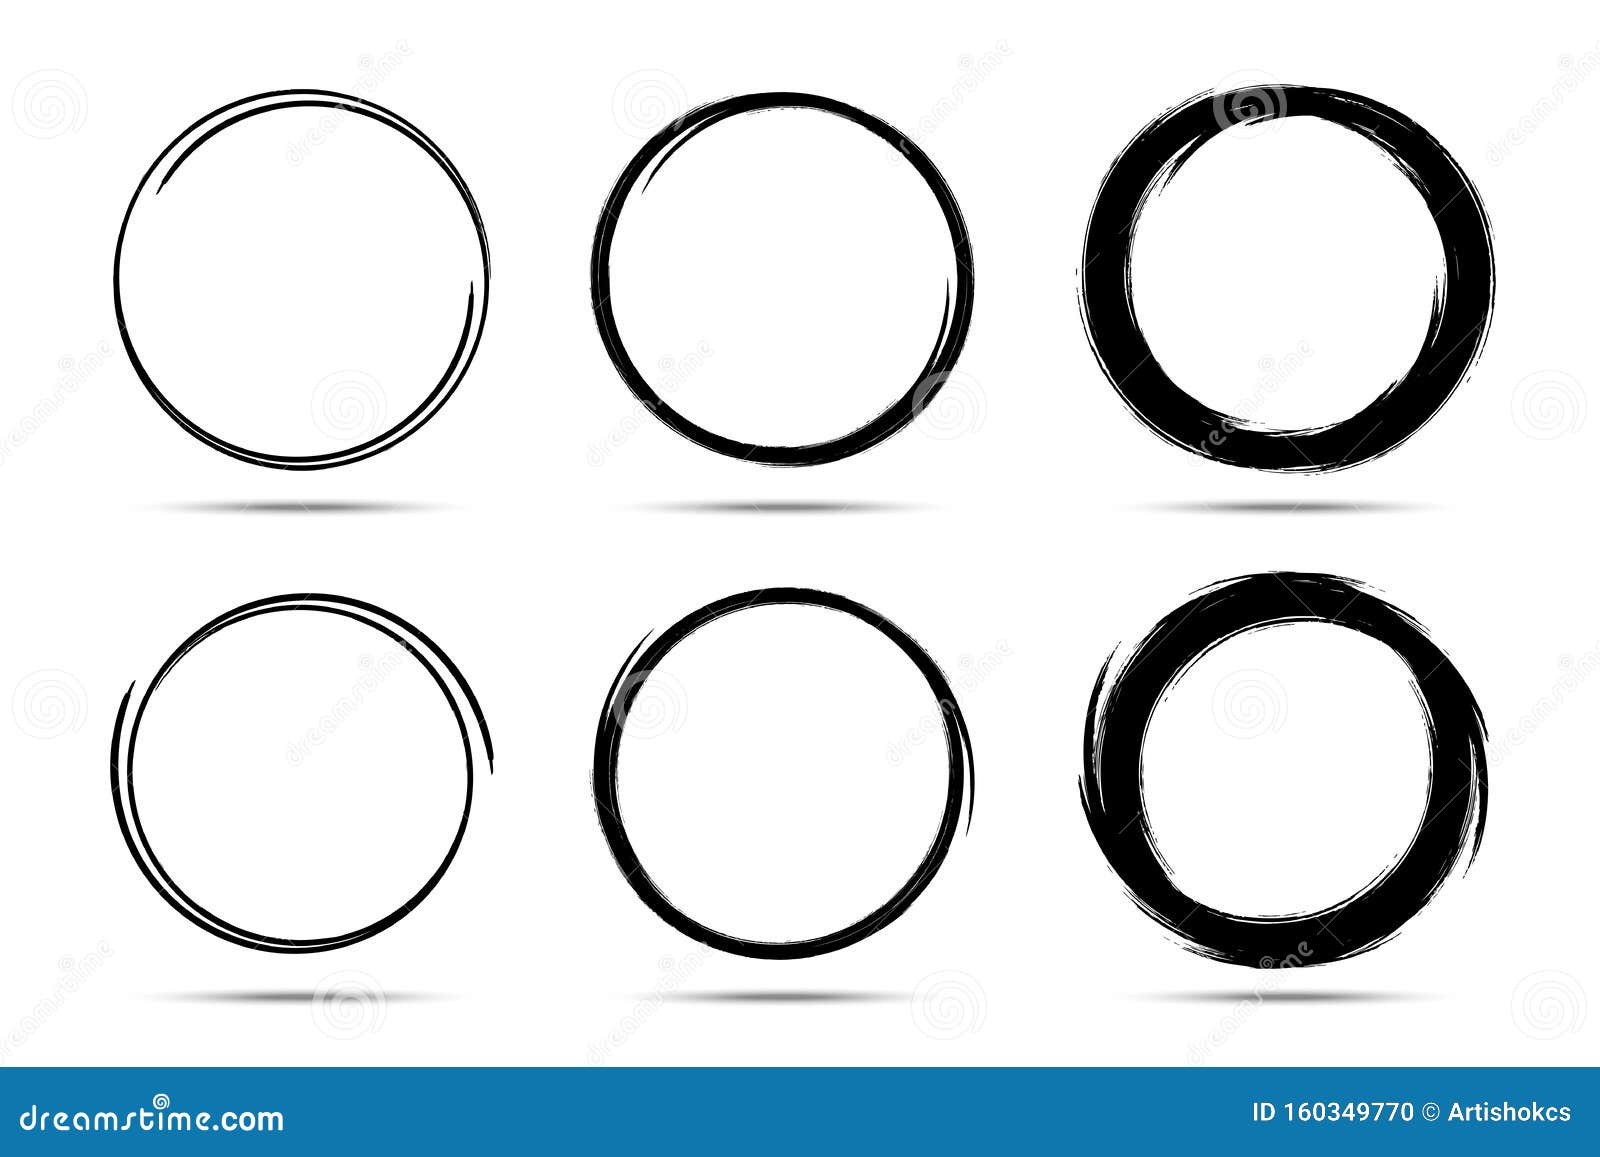 hand drawn circles sketch frame set. scribble line circle. doodle circular round logo  drawn by brush. 